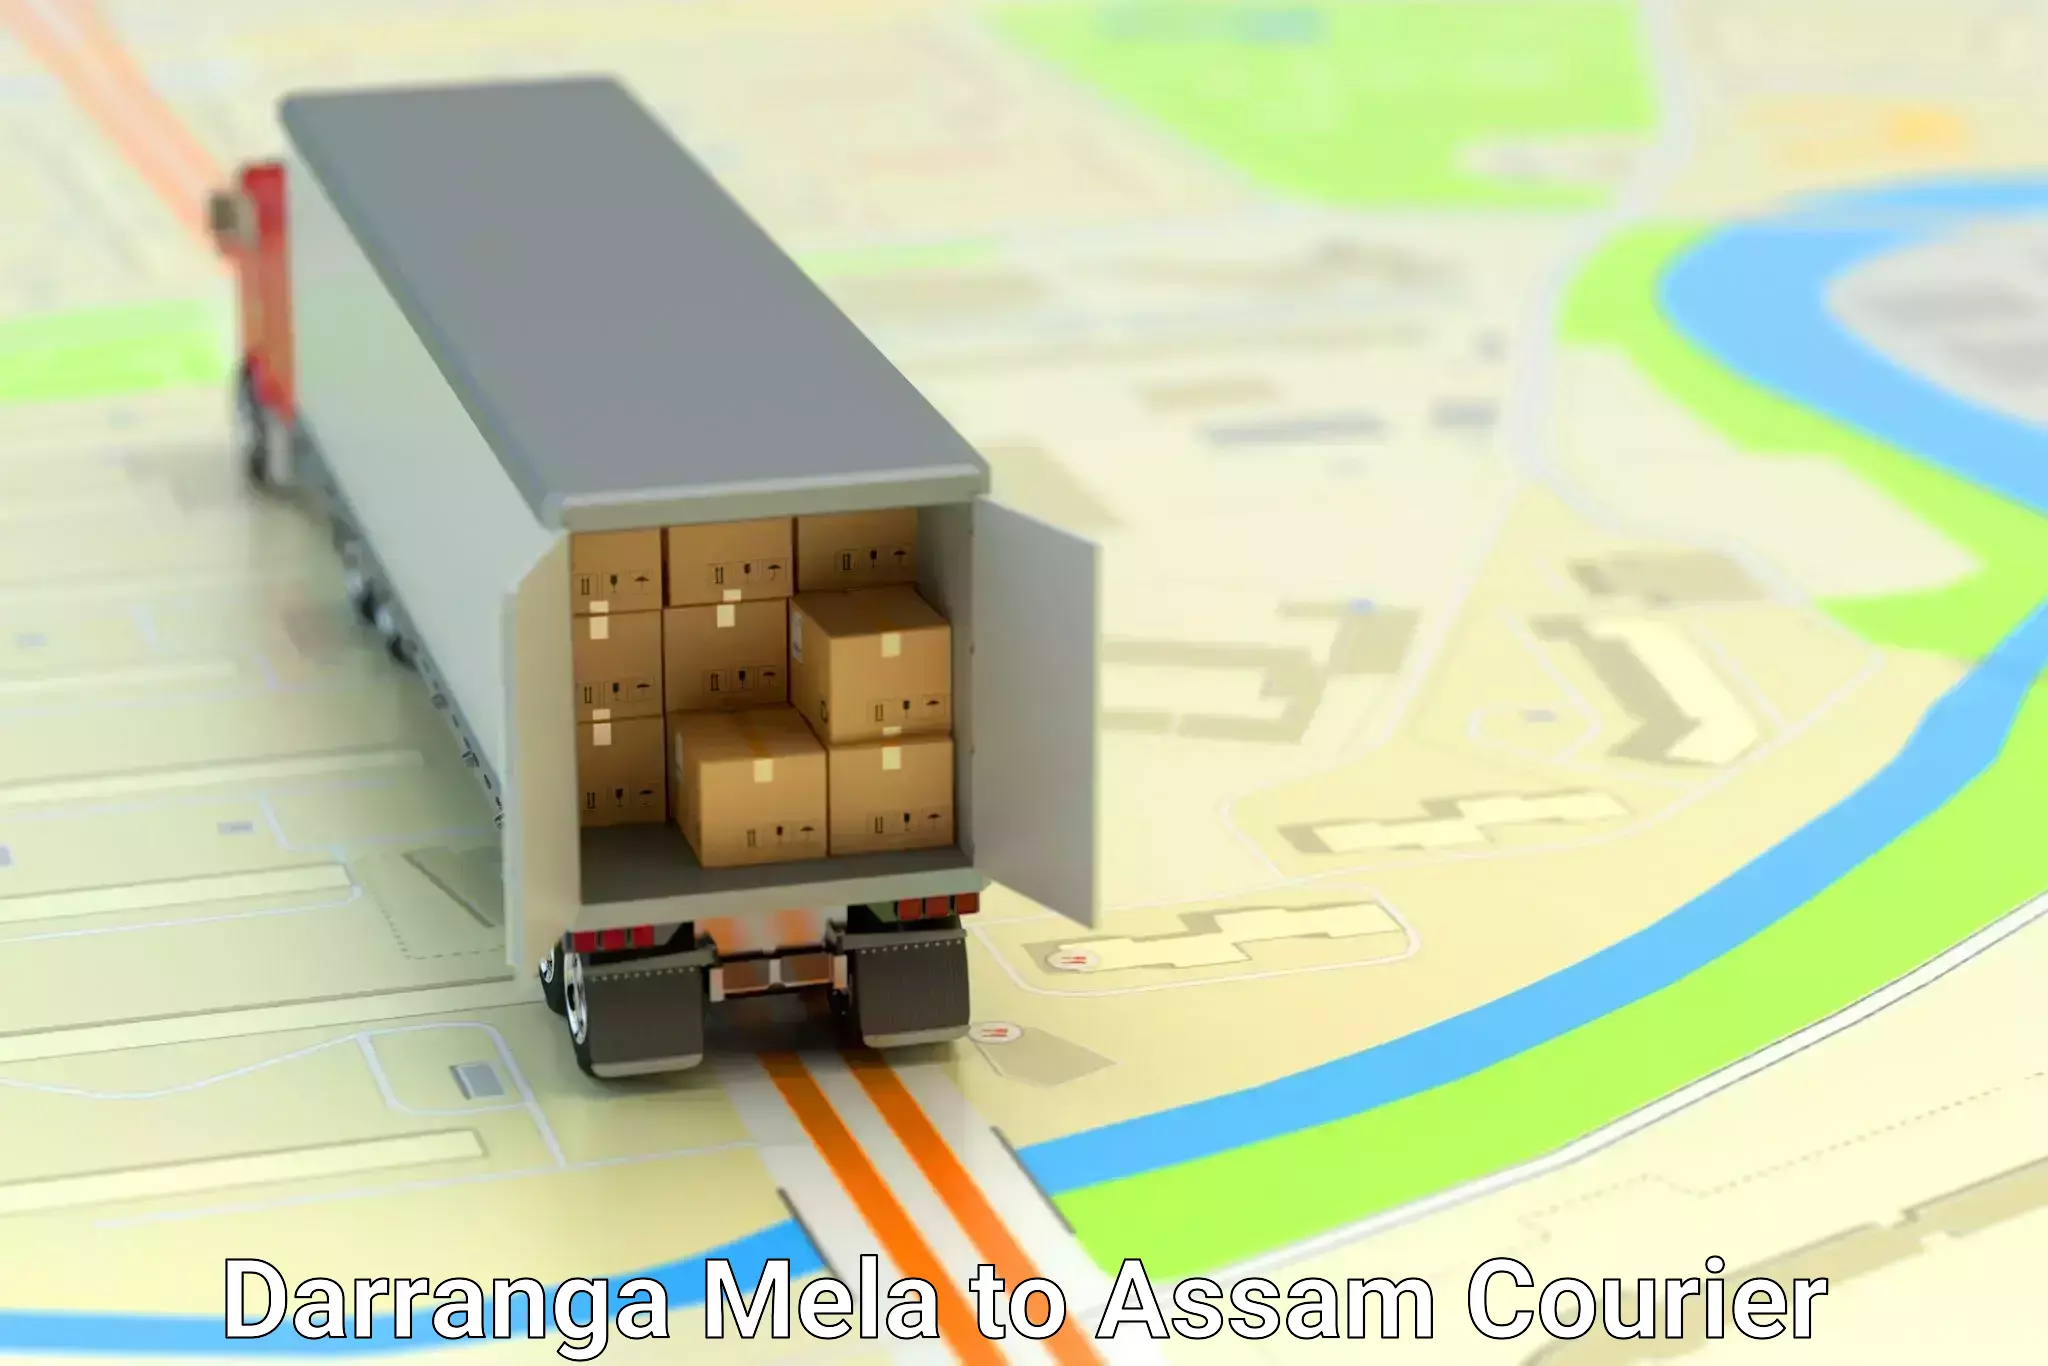 Special handling courier Darranga Mela to Assam